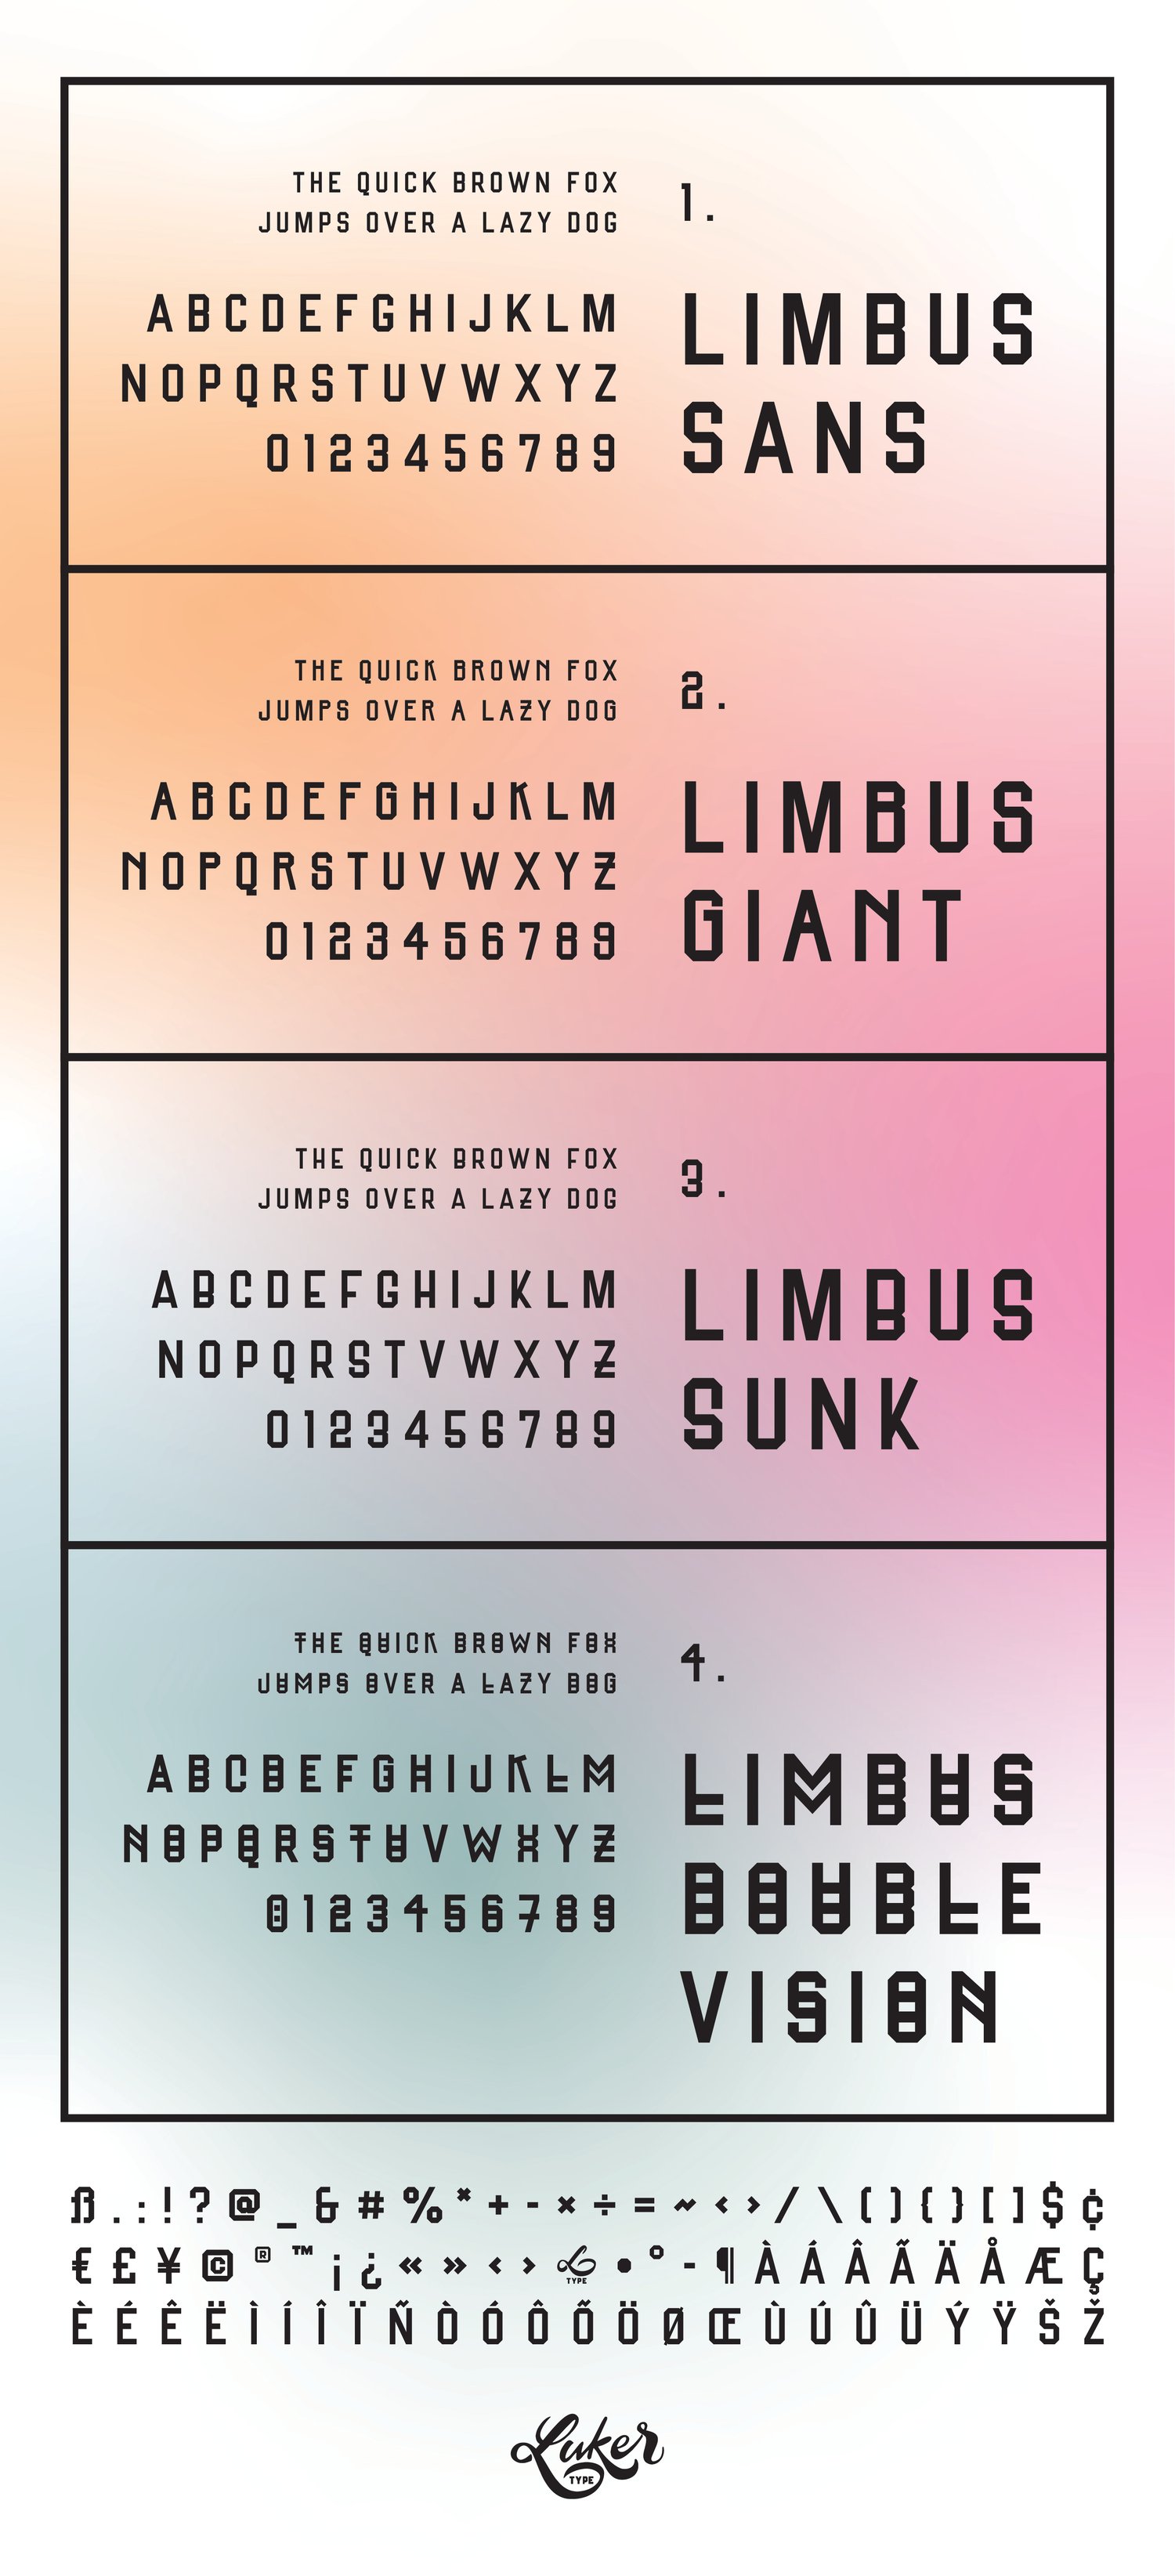 Image of Limbus Sans / Typeface